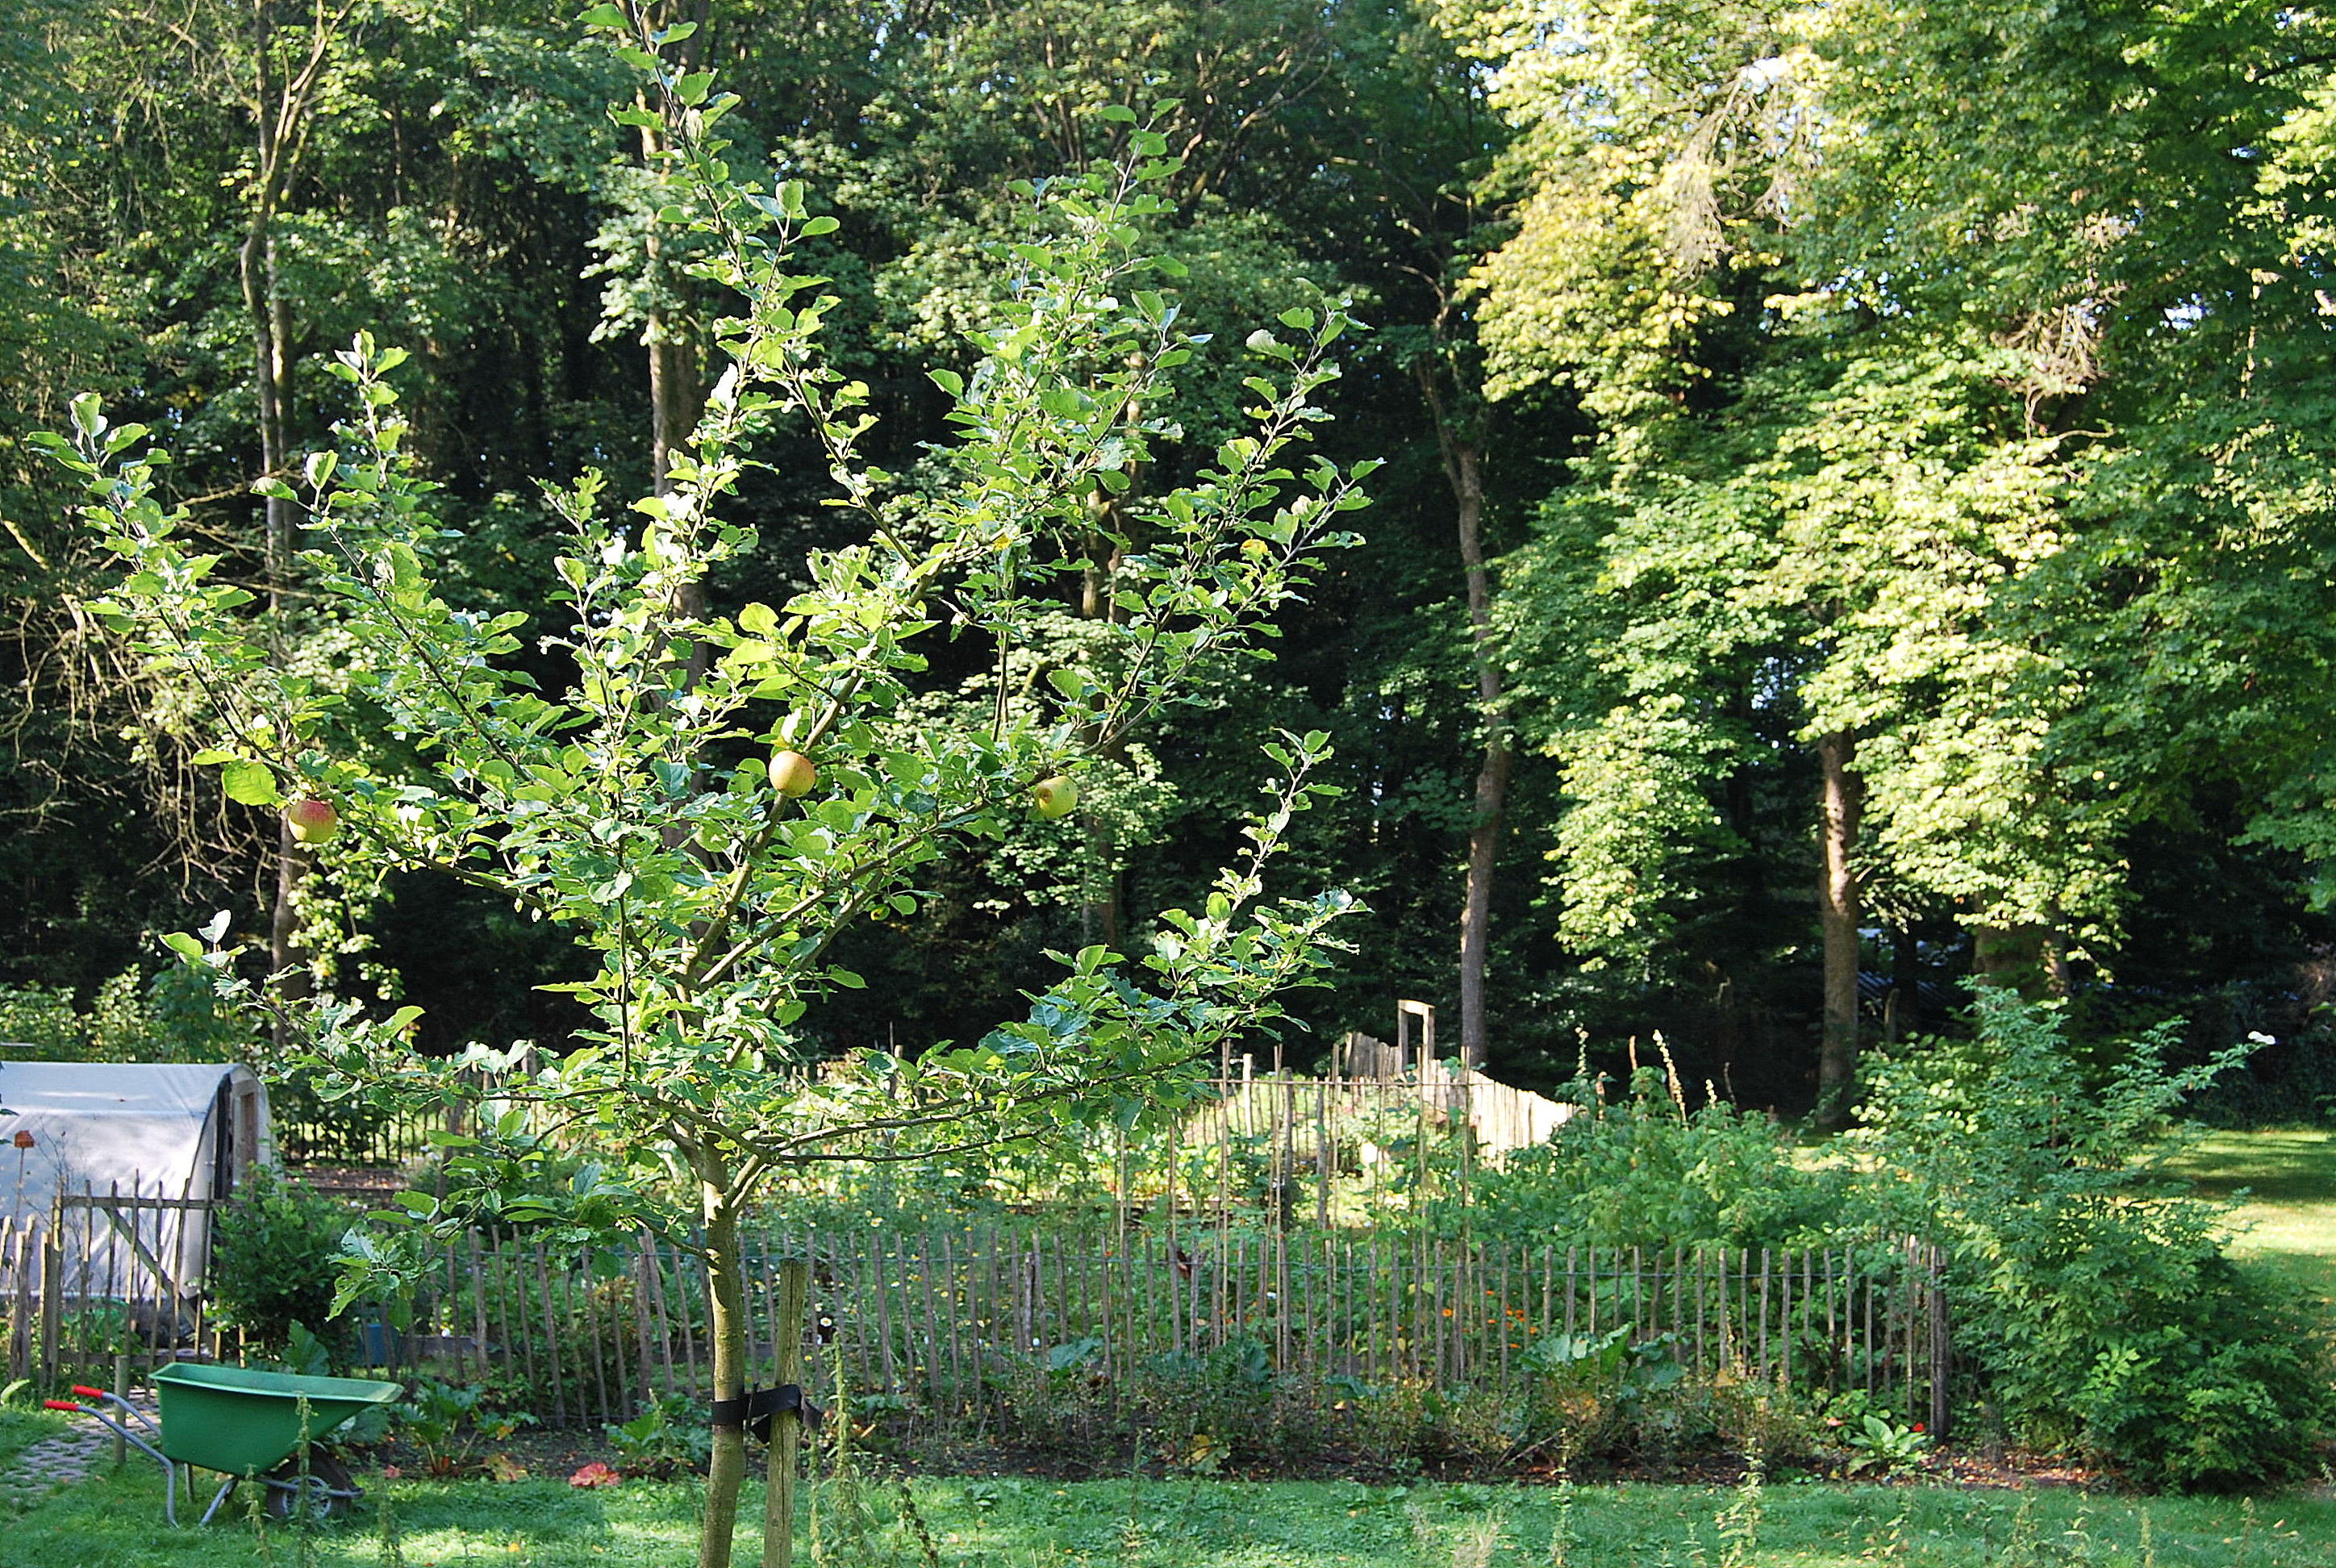 sfeerbeeld van de moestuin met op de voorgrond een boom uit de boomgaard en linksonder een kruiwagen